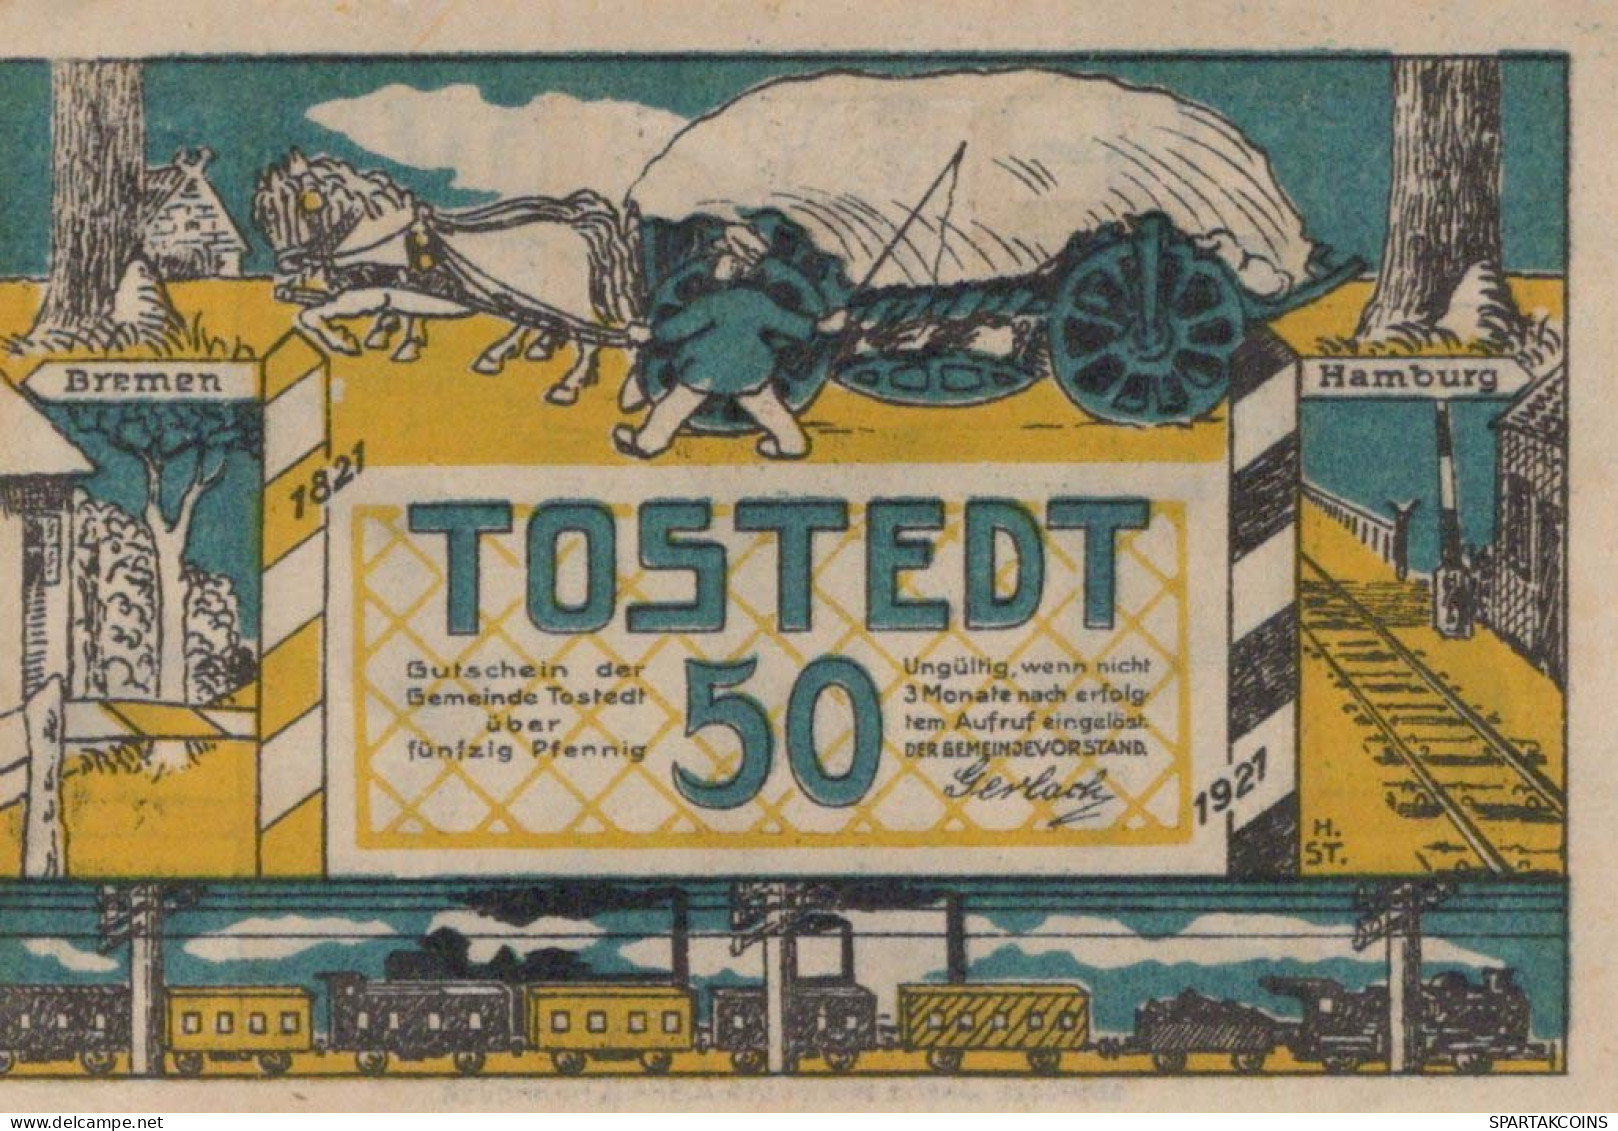 50 PFENNIG 1921 Stadt TOSTEDT Hanover DEUTSCHLAND Notgeld Banknote #PG352 - [11] Local Banknote Issues